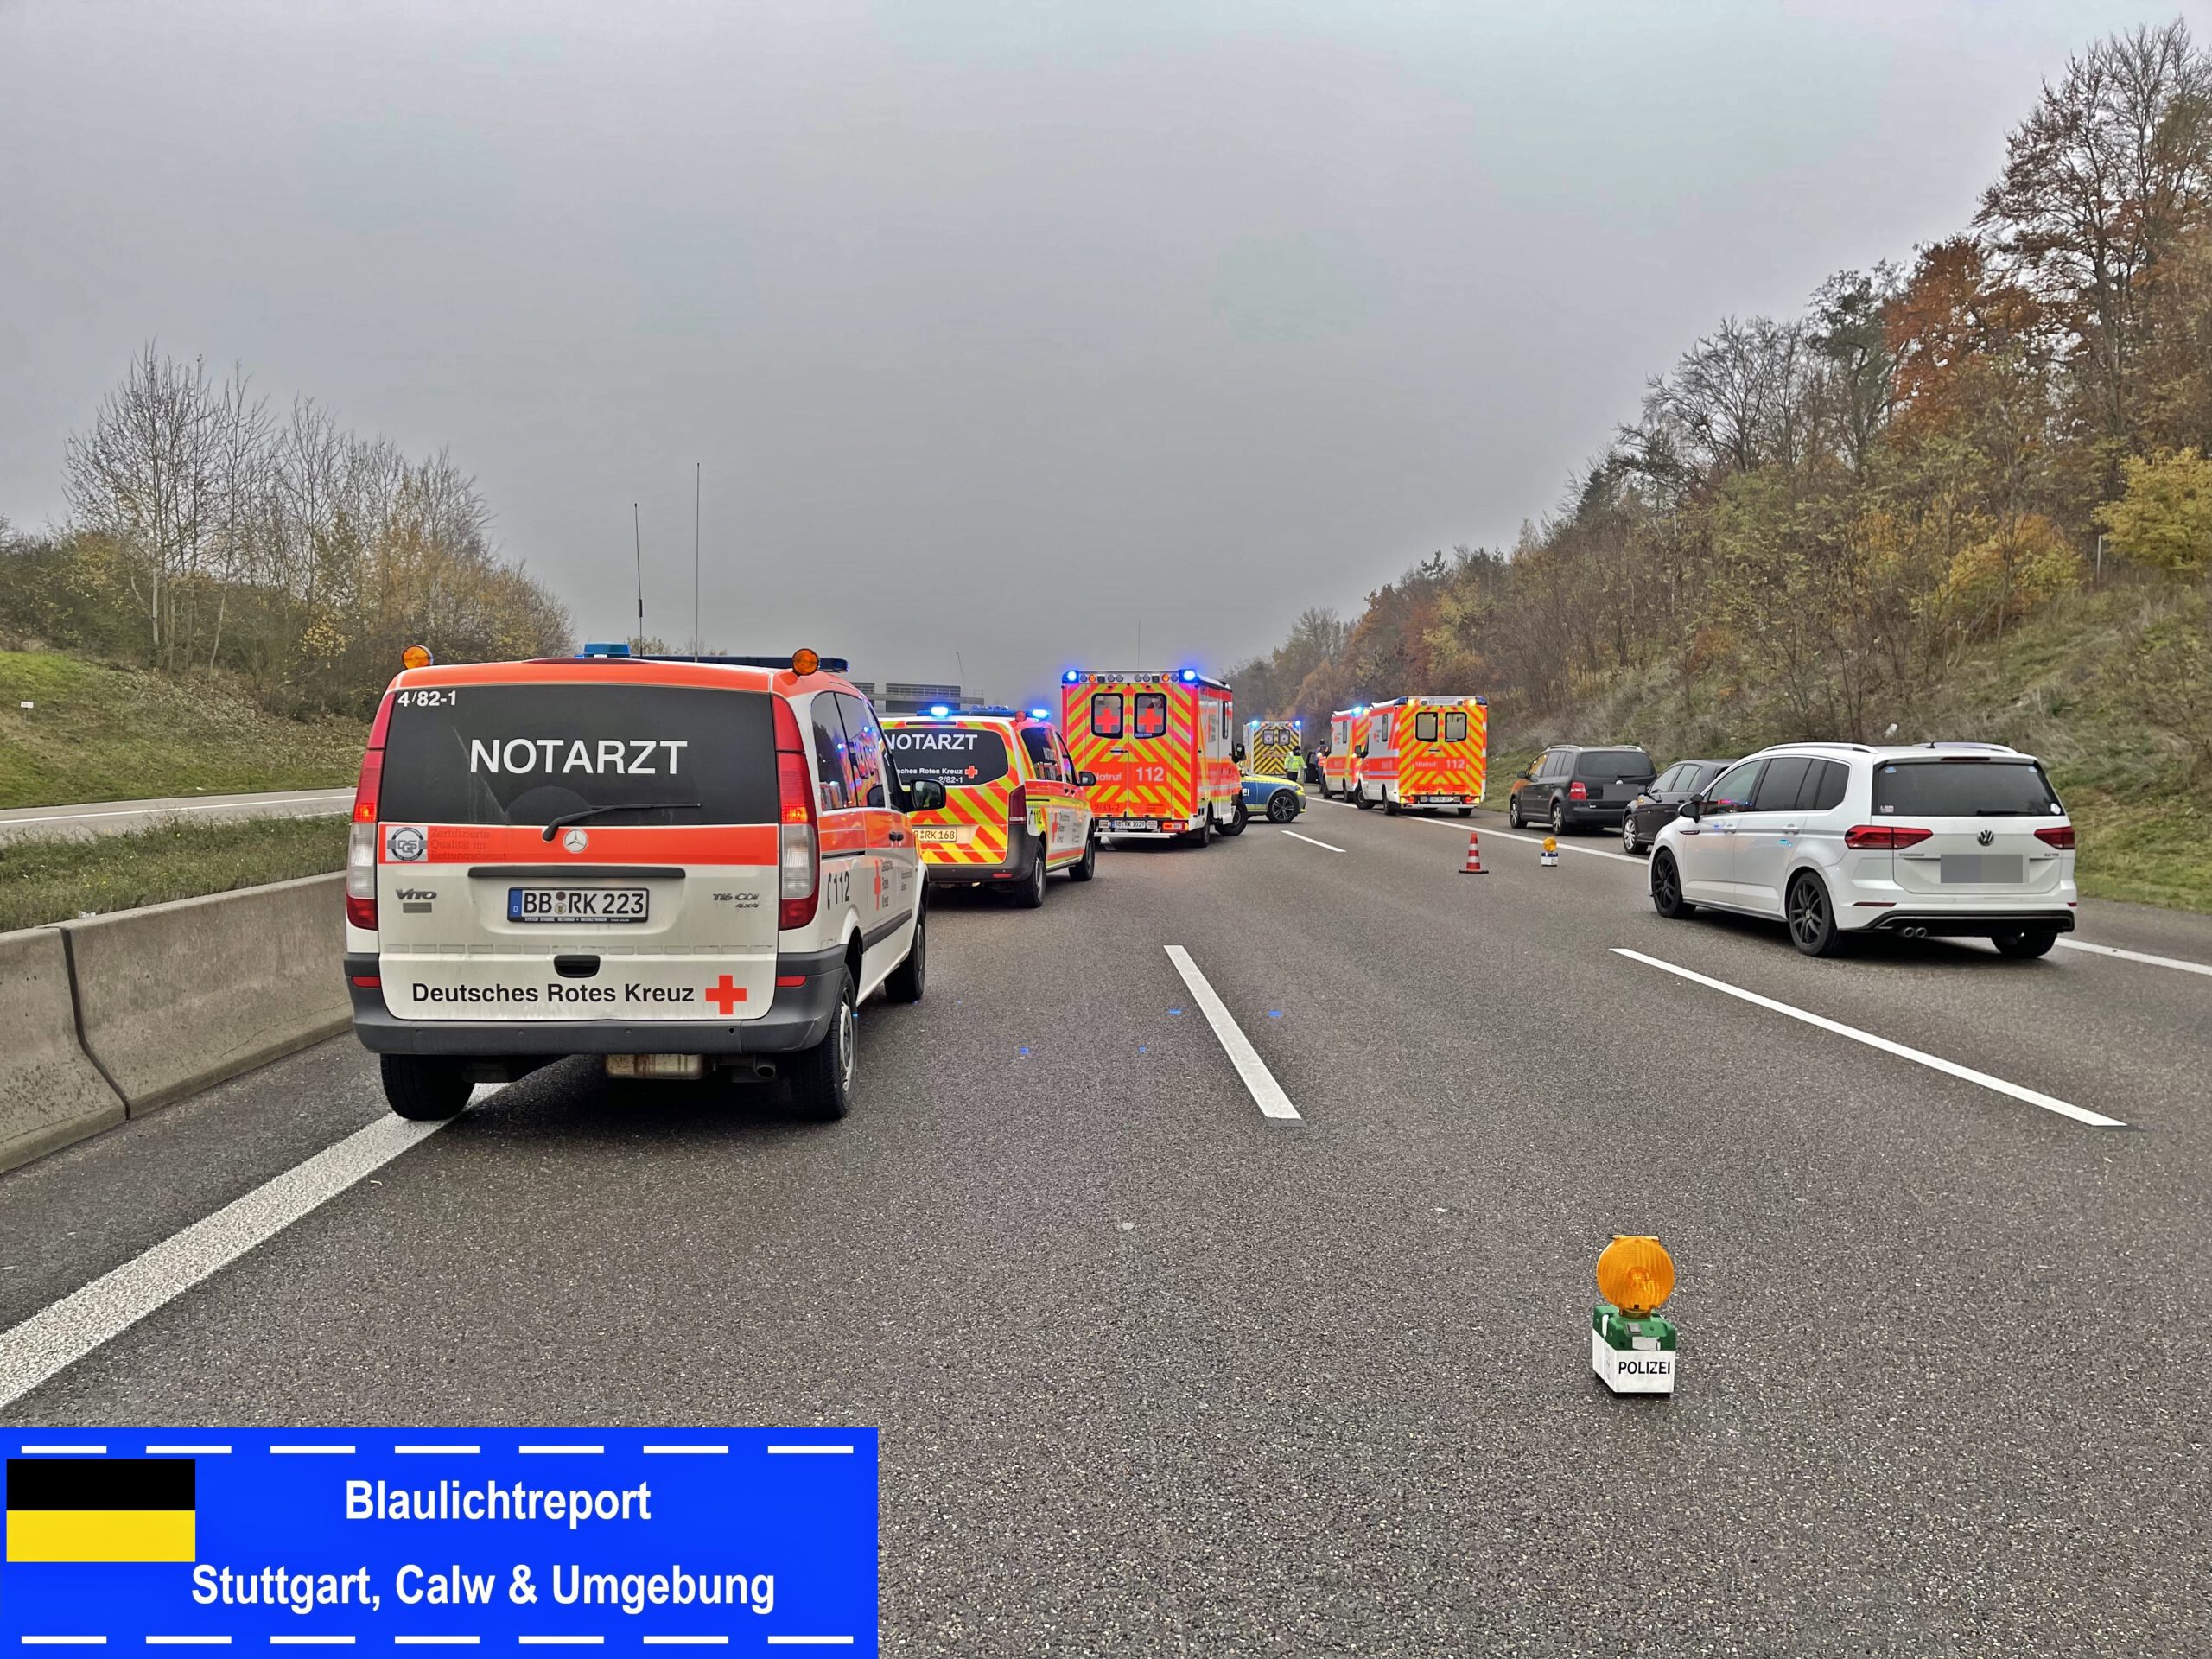 04.12.2022 – Rutesheim: Unfall auf der A8 mit 5 Verletzten